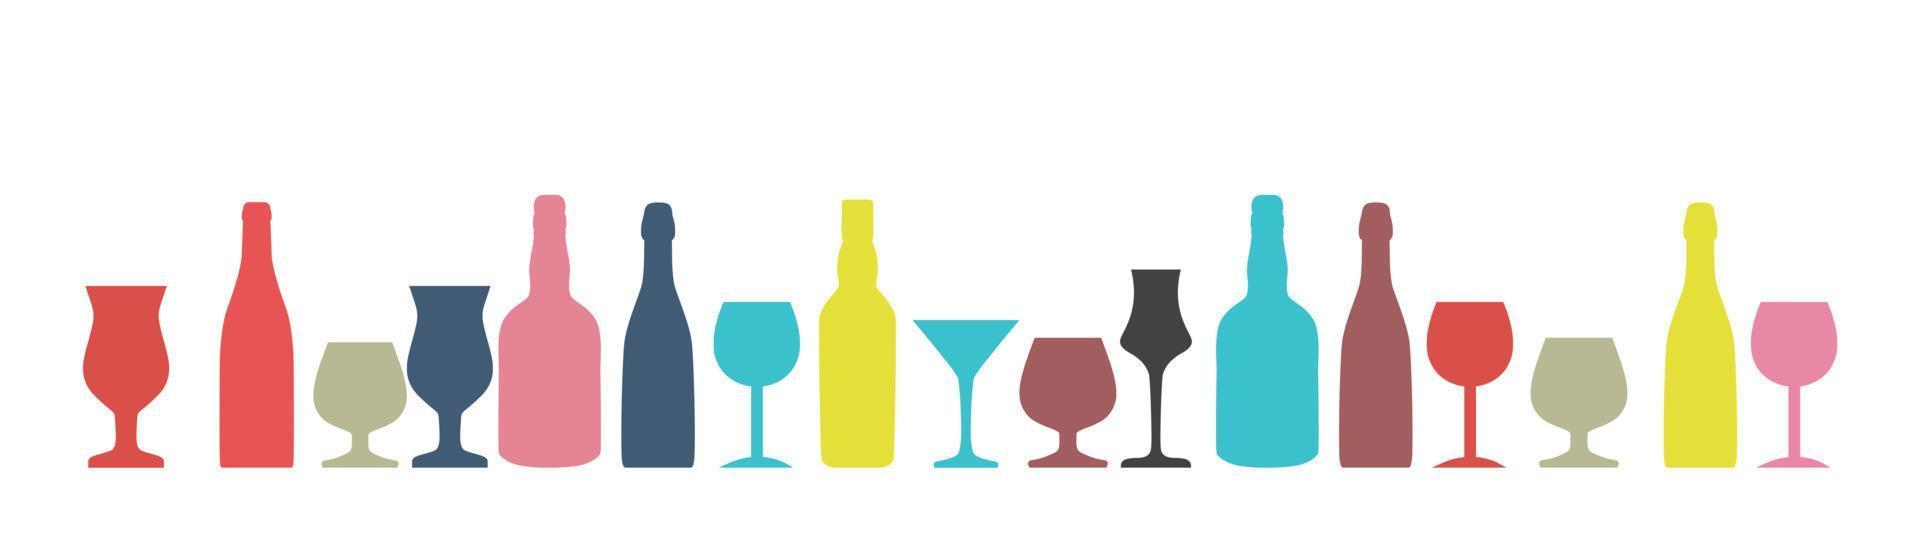 Vektor-Illustration der Silhouette Alkoholflasche Hintergrund vektor